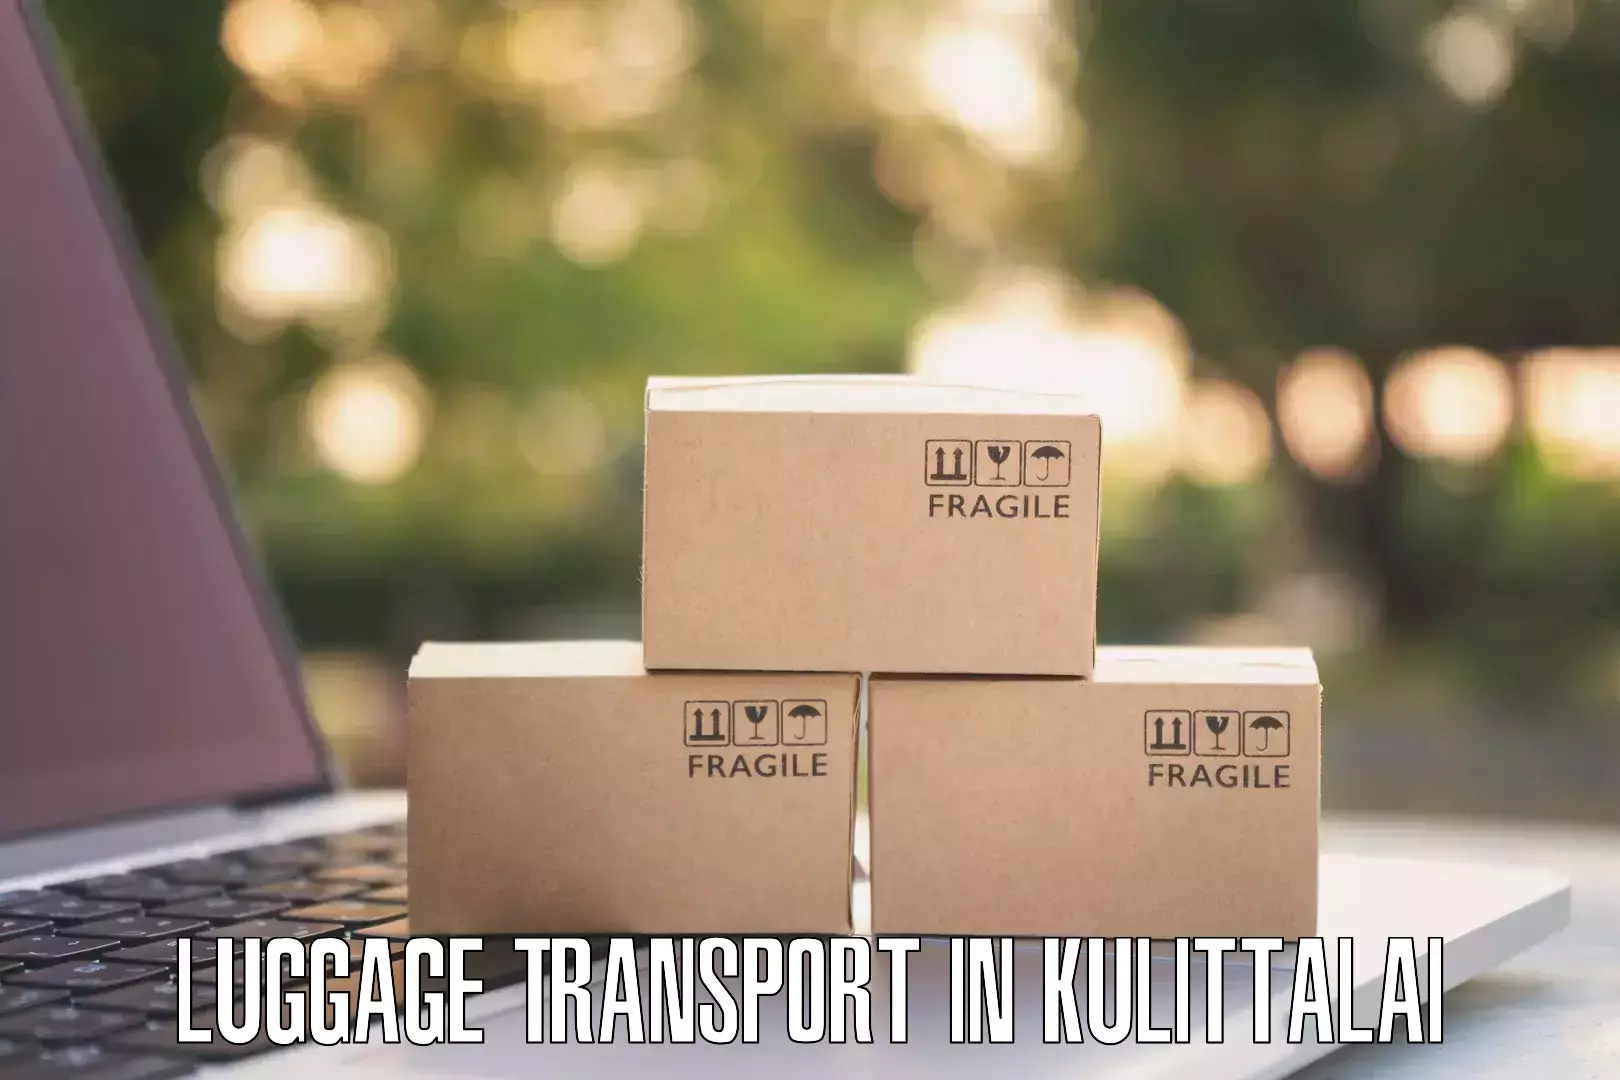 Unaccompanied luggage service in Kulittalai